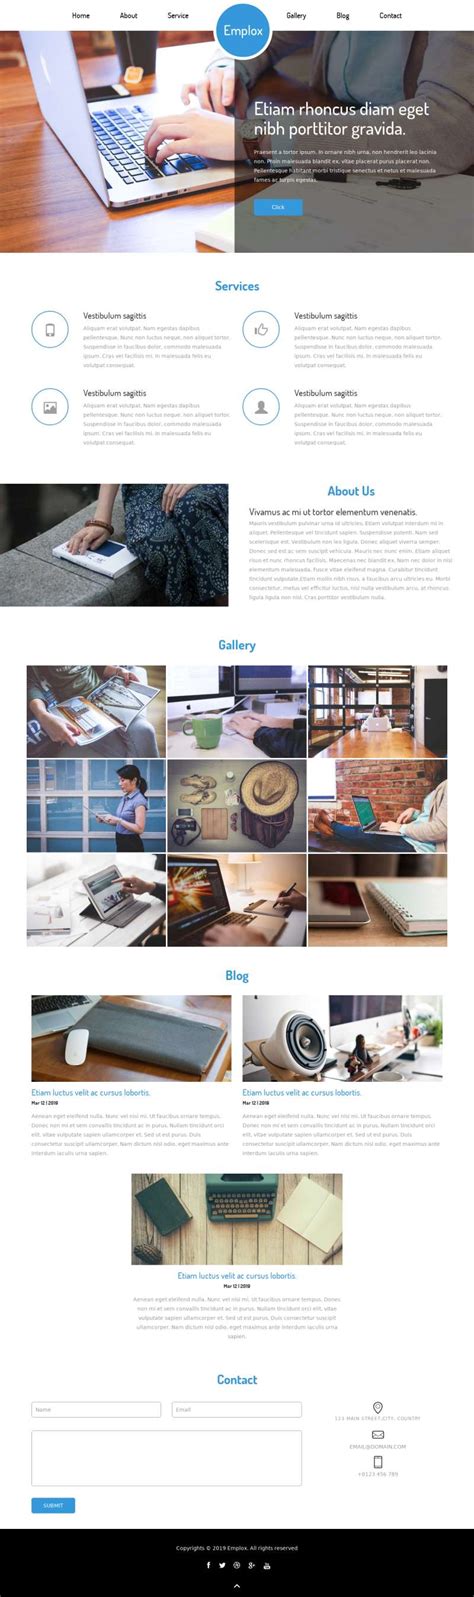 家居设计工作室网站模板网站程序 源码 模板 - 网站模板 - 哆啦Ai流程自动化